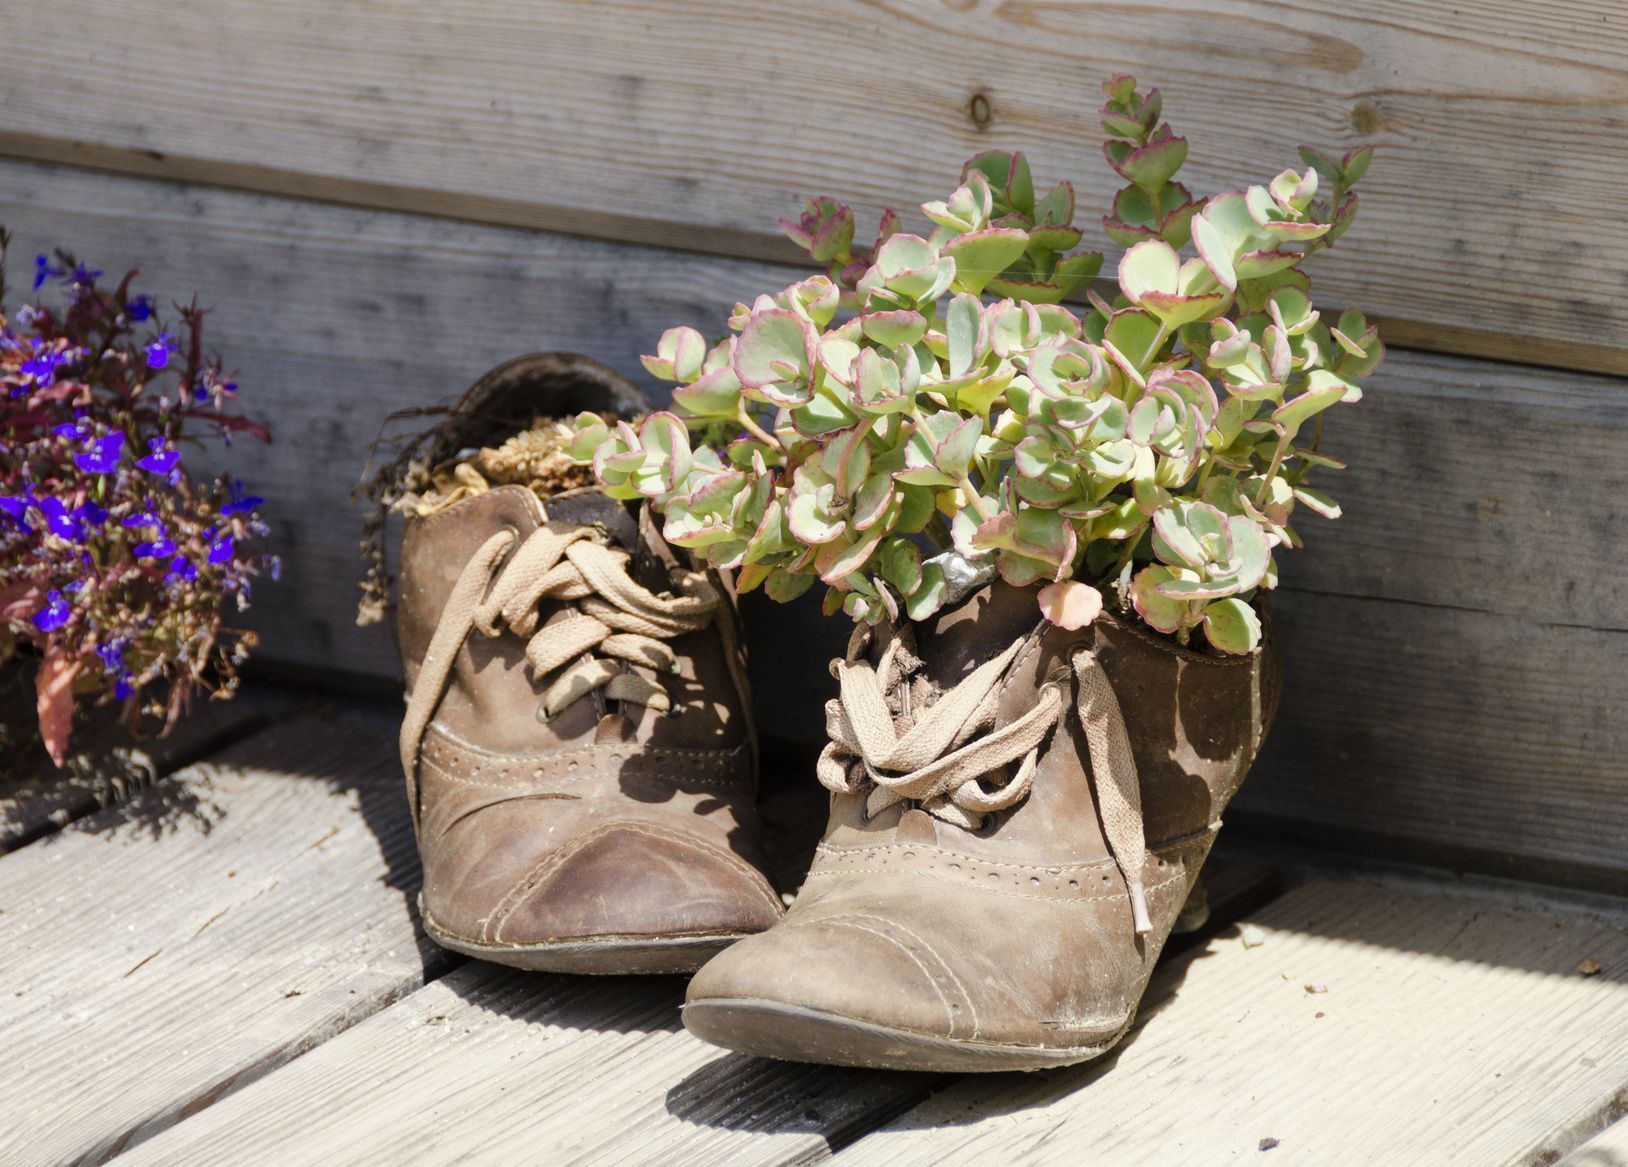 Raffiniert! Auch ausgediente Schuhe können als Pflanzengefäß herhalten.